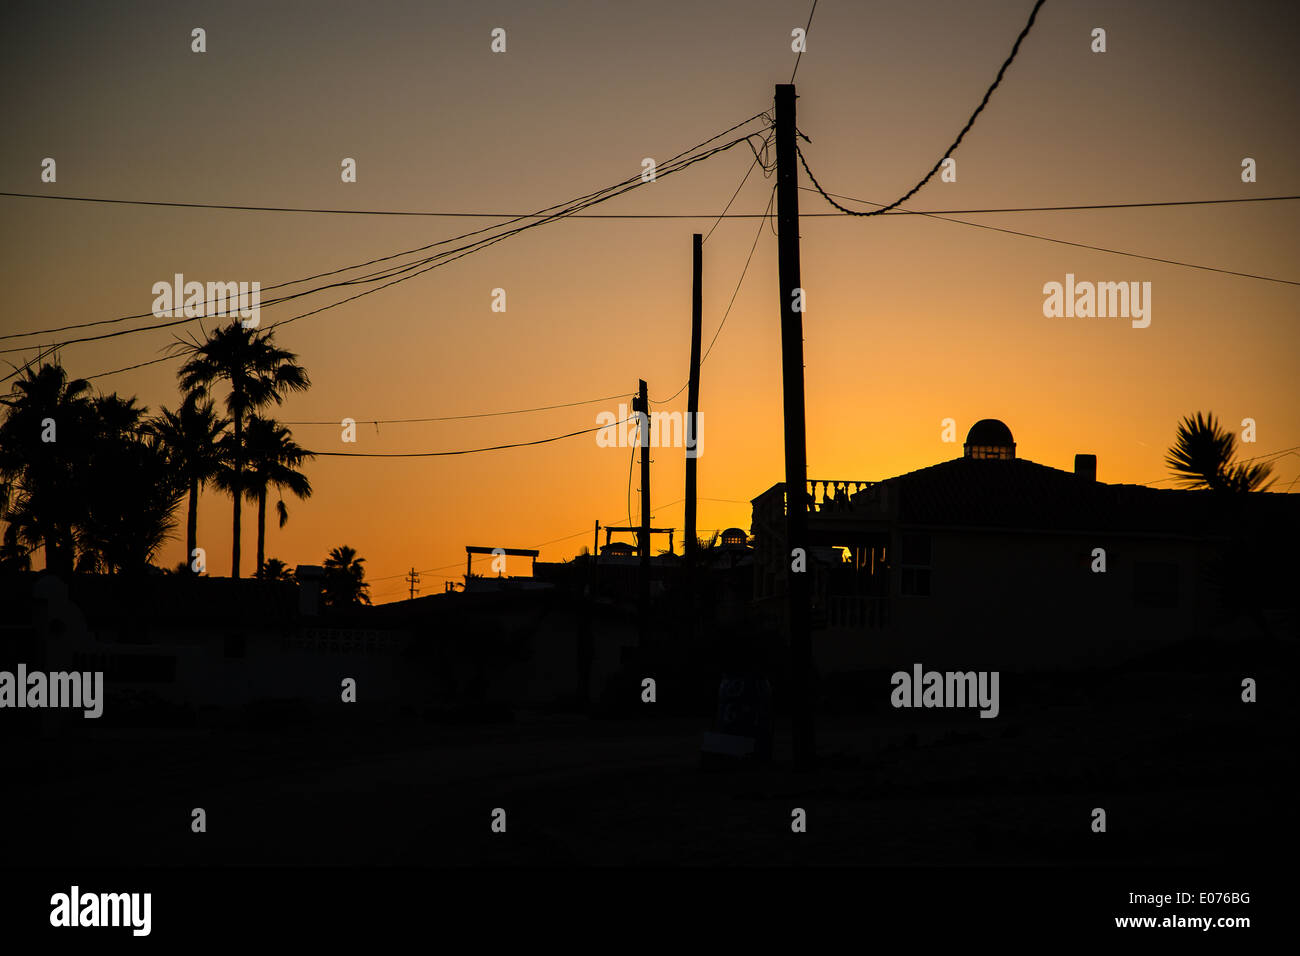 Sunset at Puerto Penasco Mexico Stock Photo